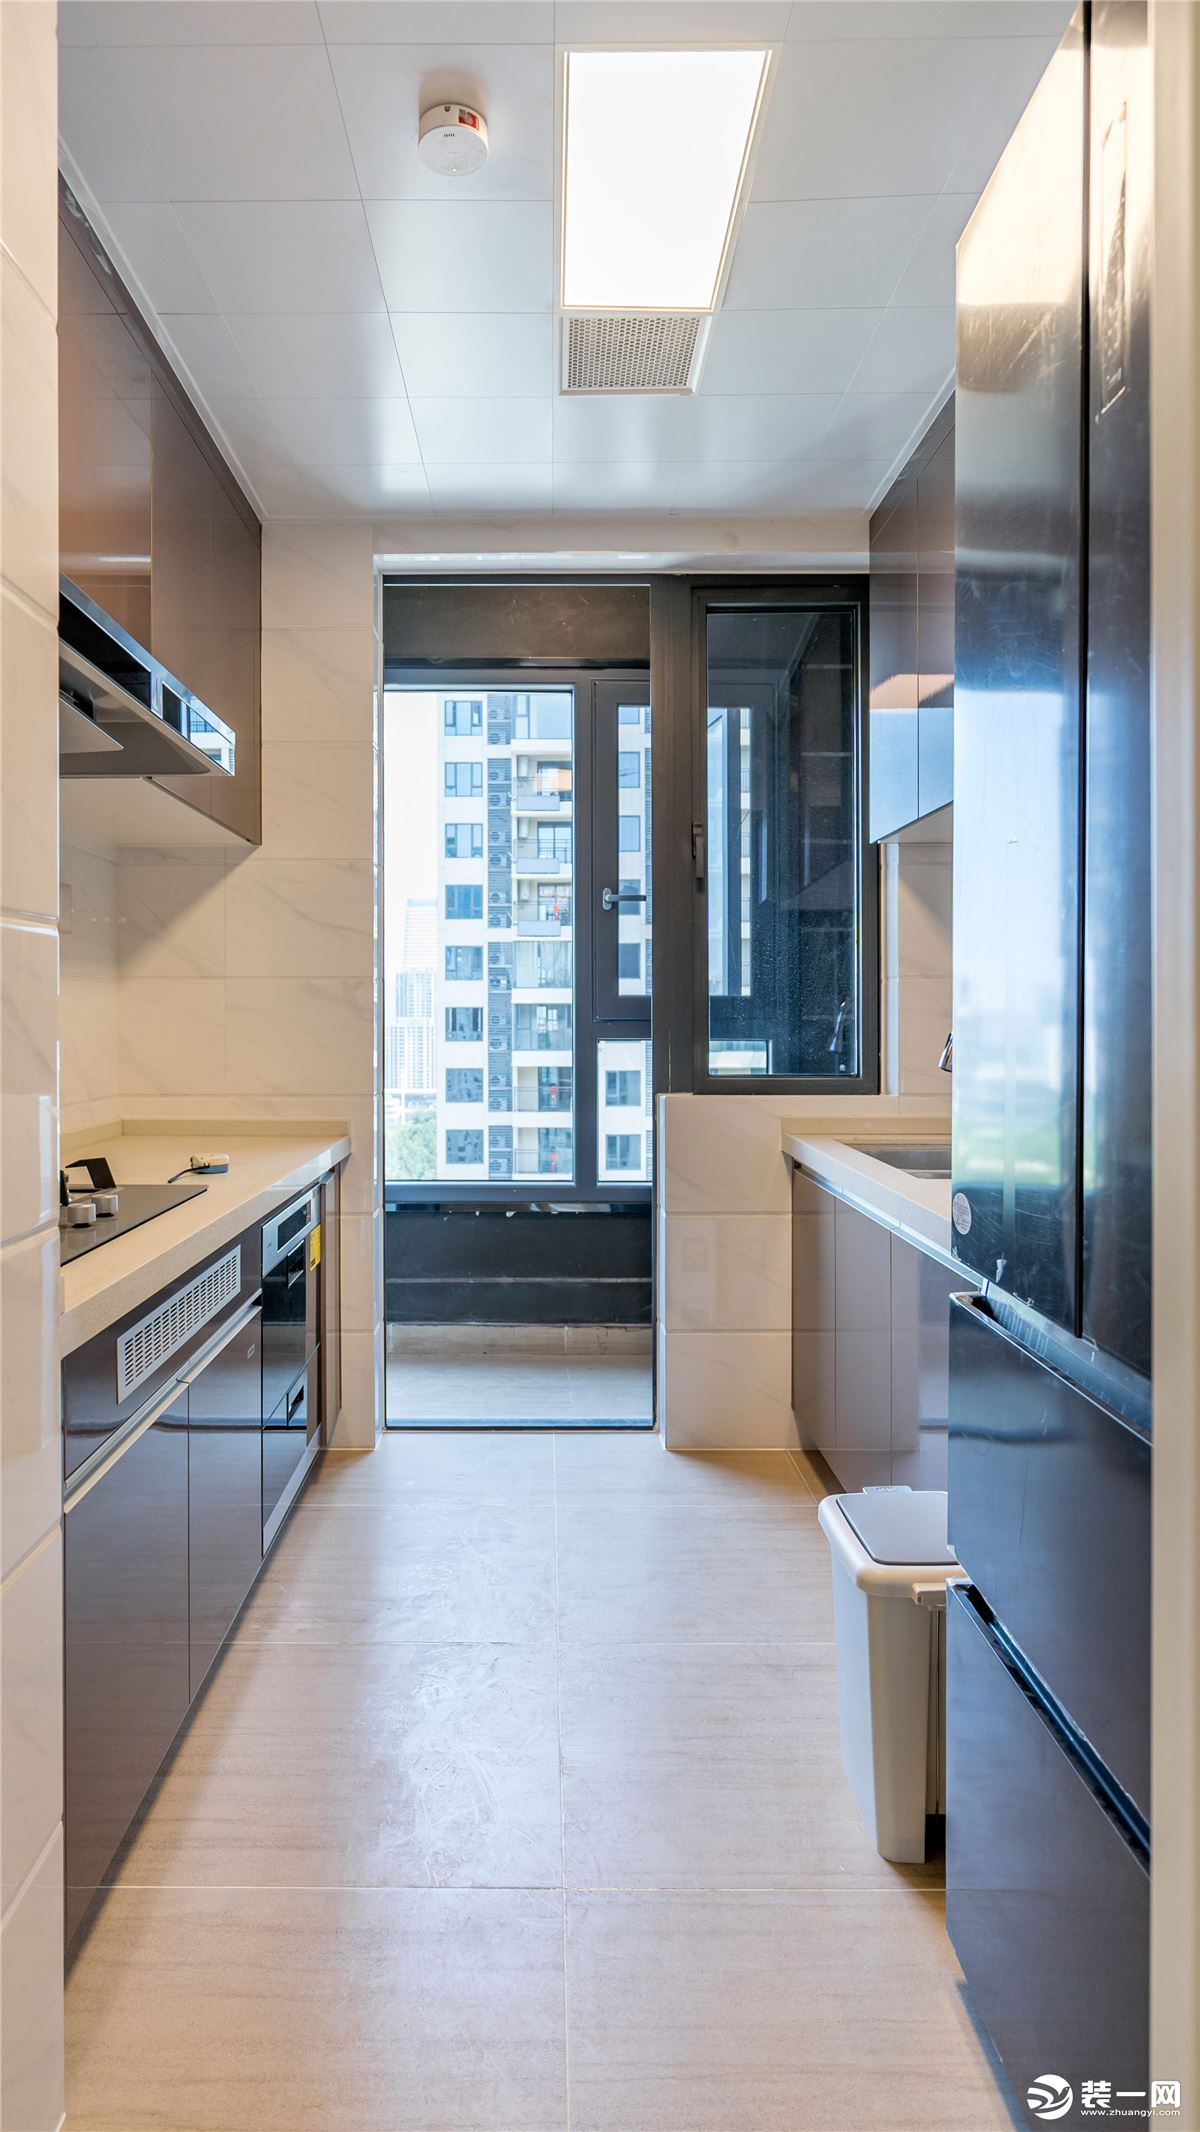 灰黑色边框的透明窗户及门，将厨房和阳台分割的同时保证了厨房的采光和阳台的封闭性。小阳台也为厨房提供了